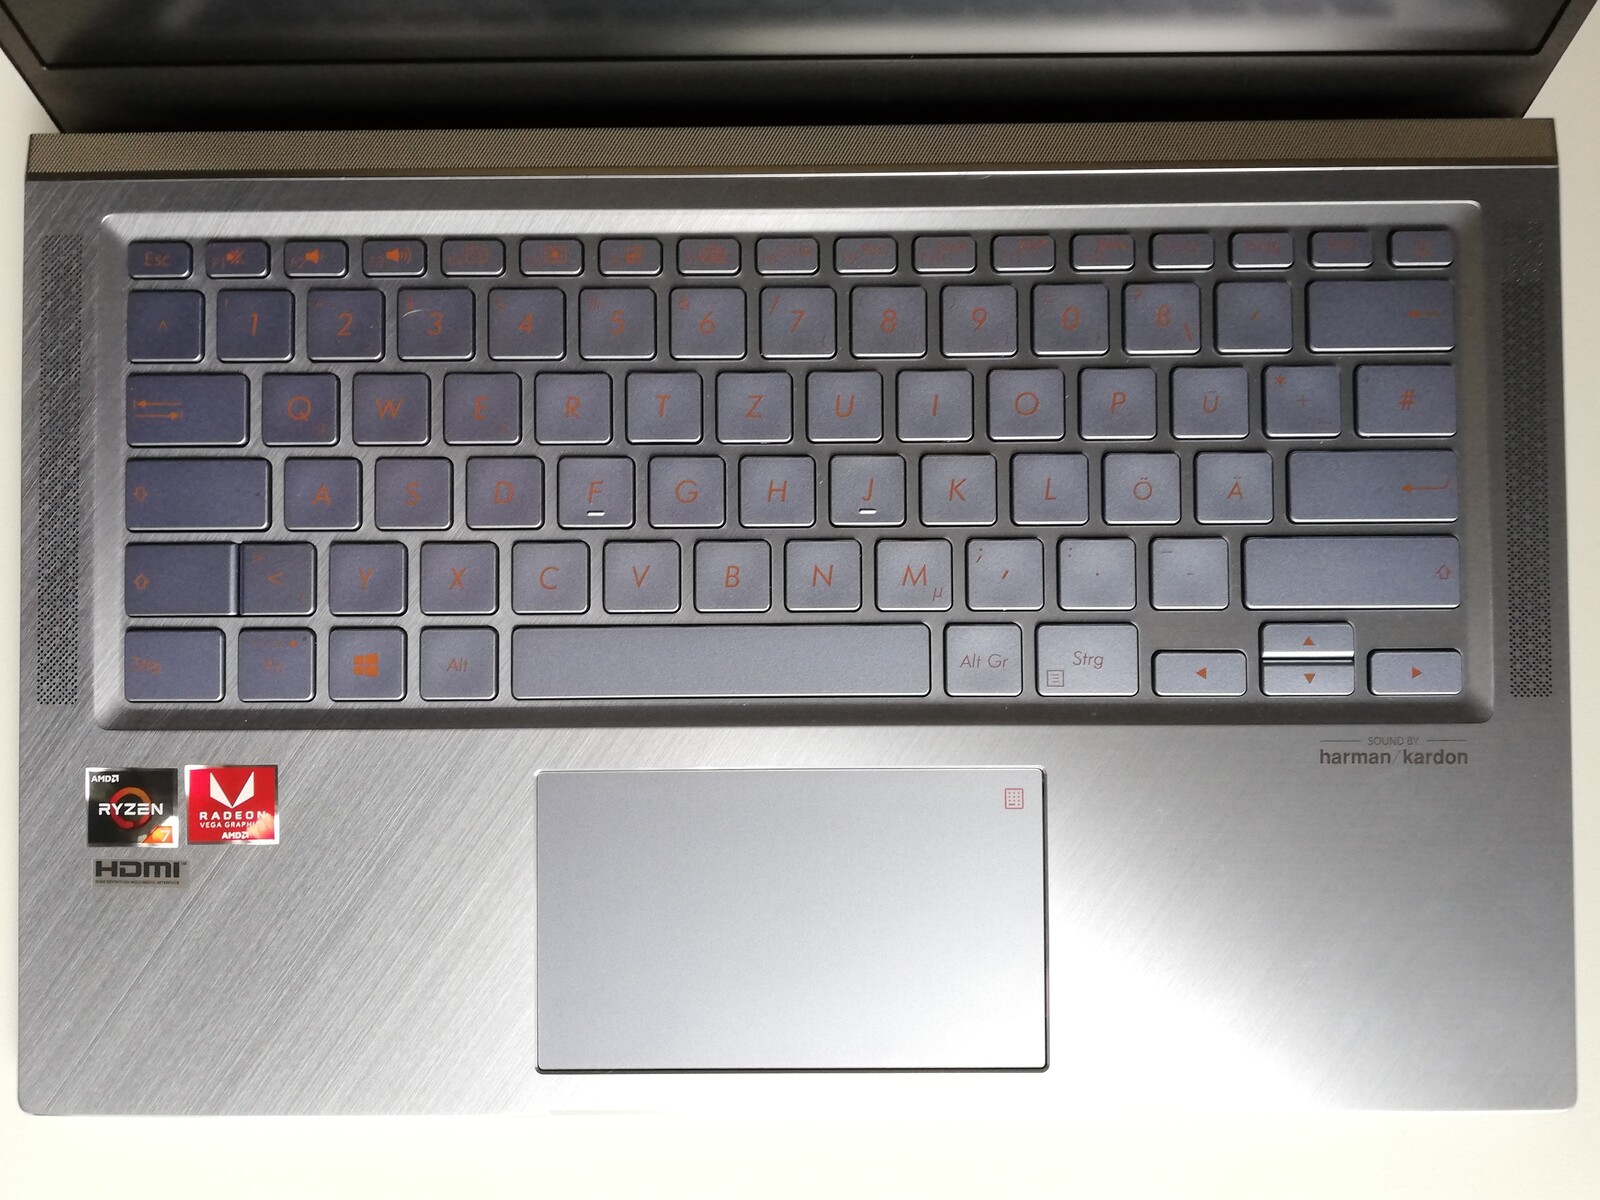 Đánh giá Asus ZenBook 14 UM431DA: Laptop Ryzen hiệu năng tốt, Chuyên trang tư vấn laptop